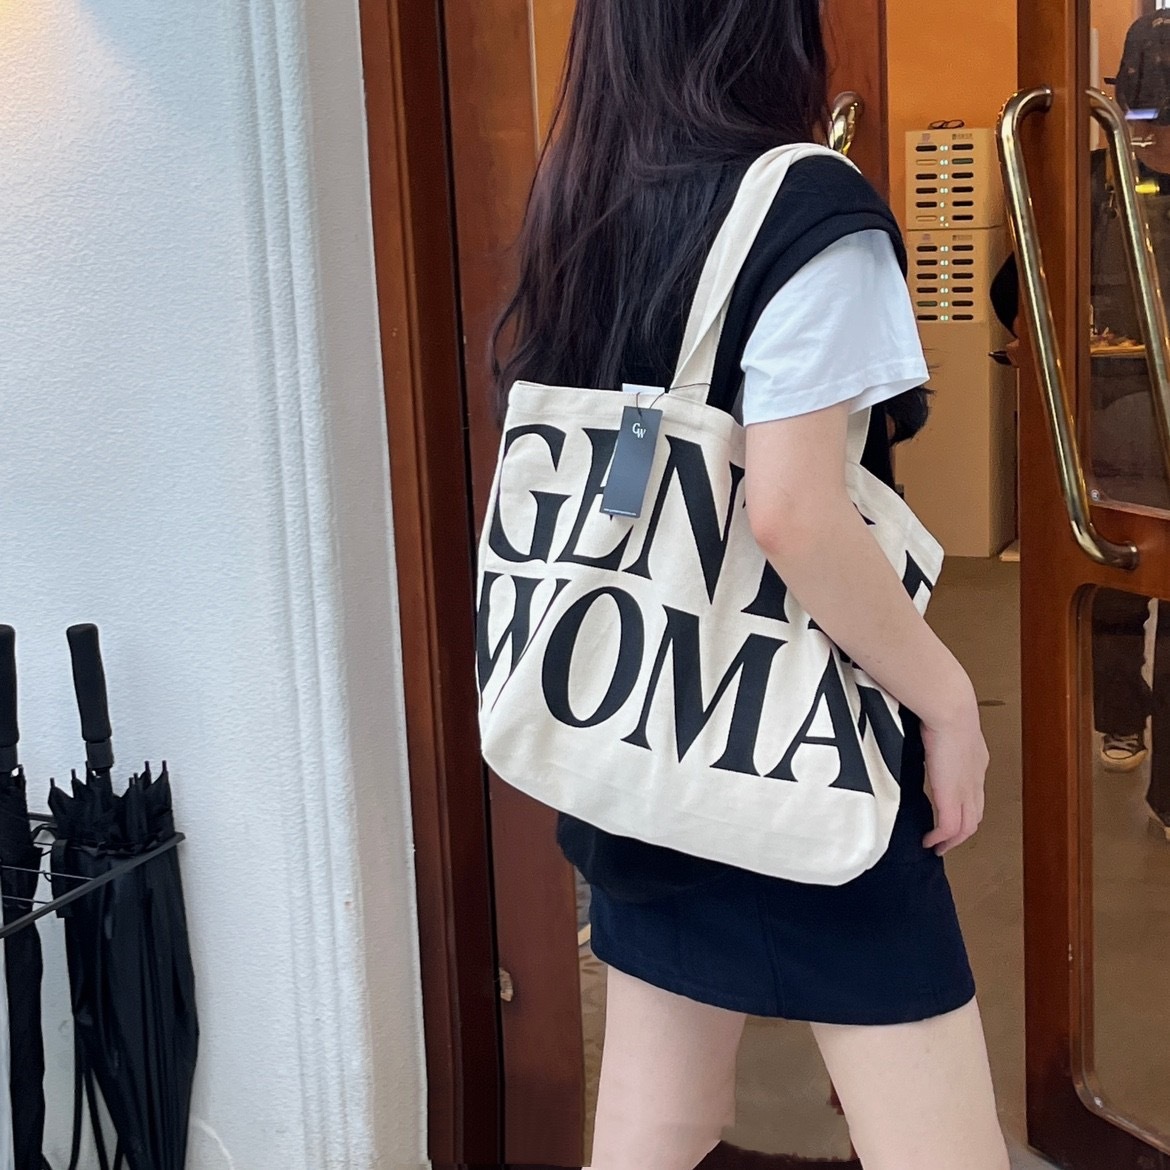 Gentlewoman Tote Bag – Room Twoo